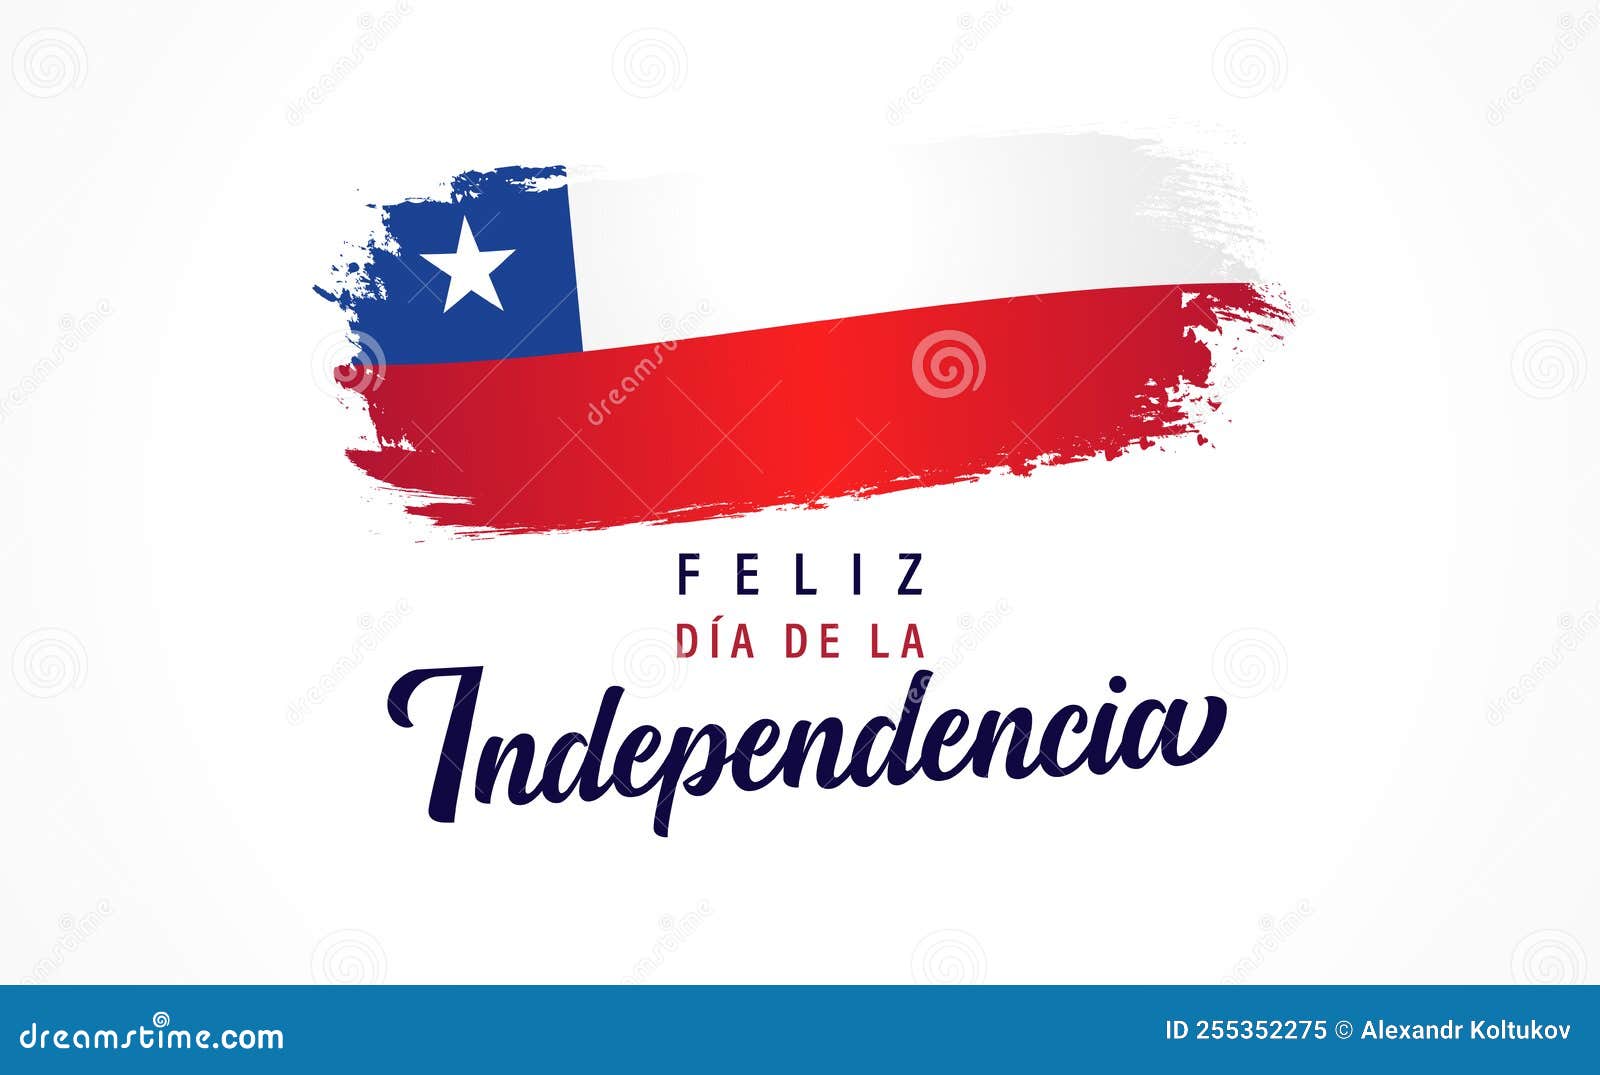 feliz dia de la independencia chile lettering and watercolor flag